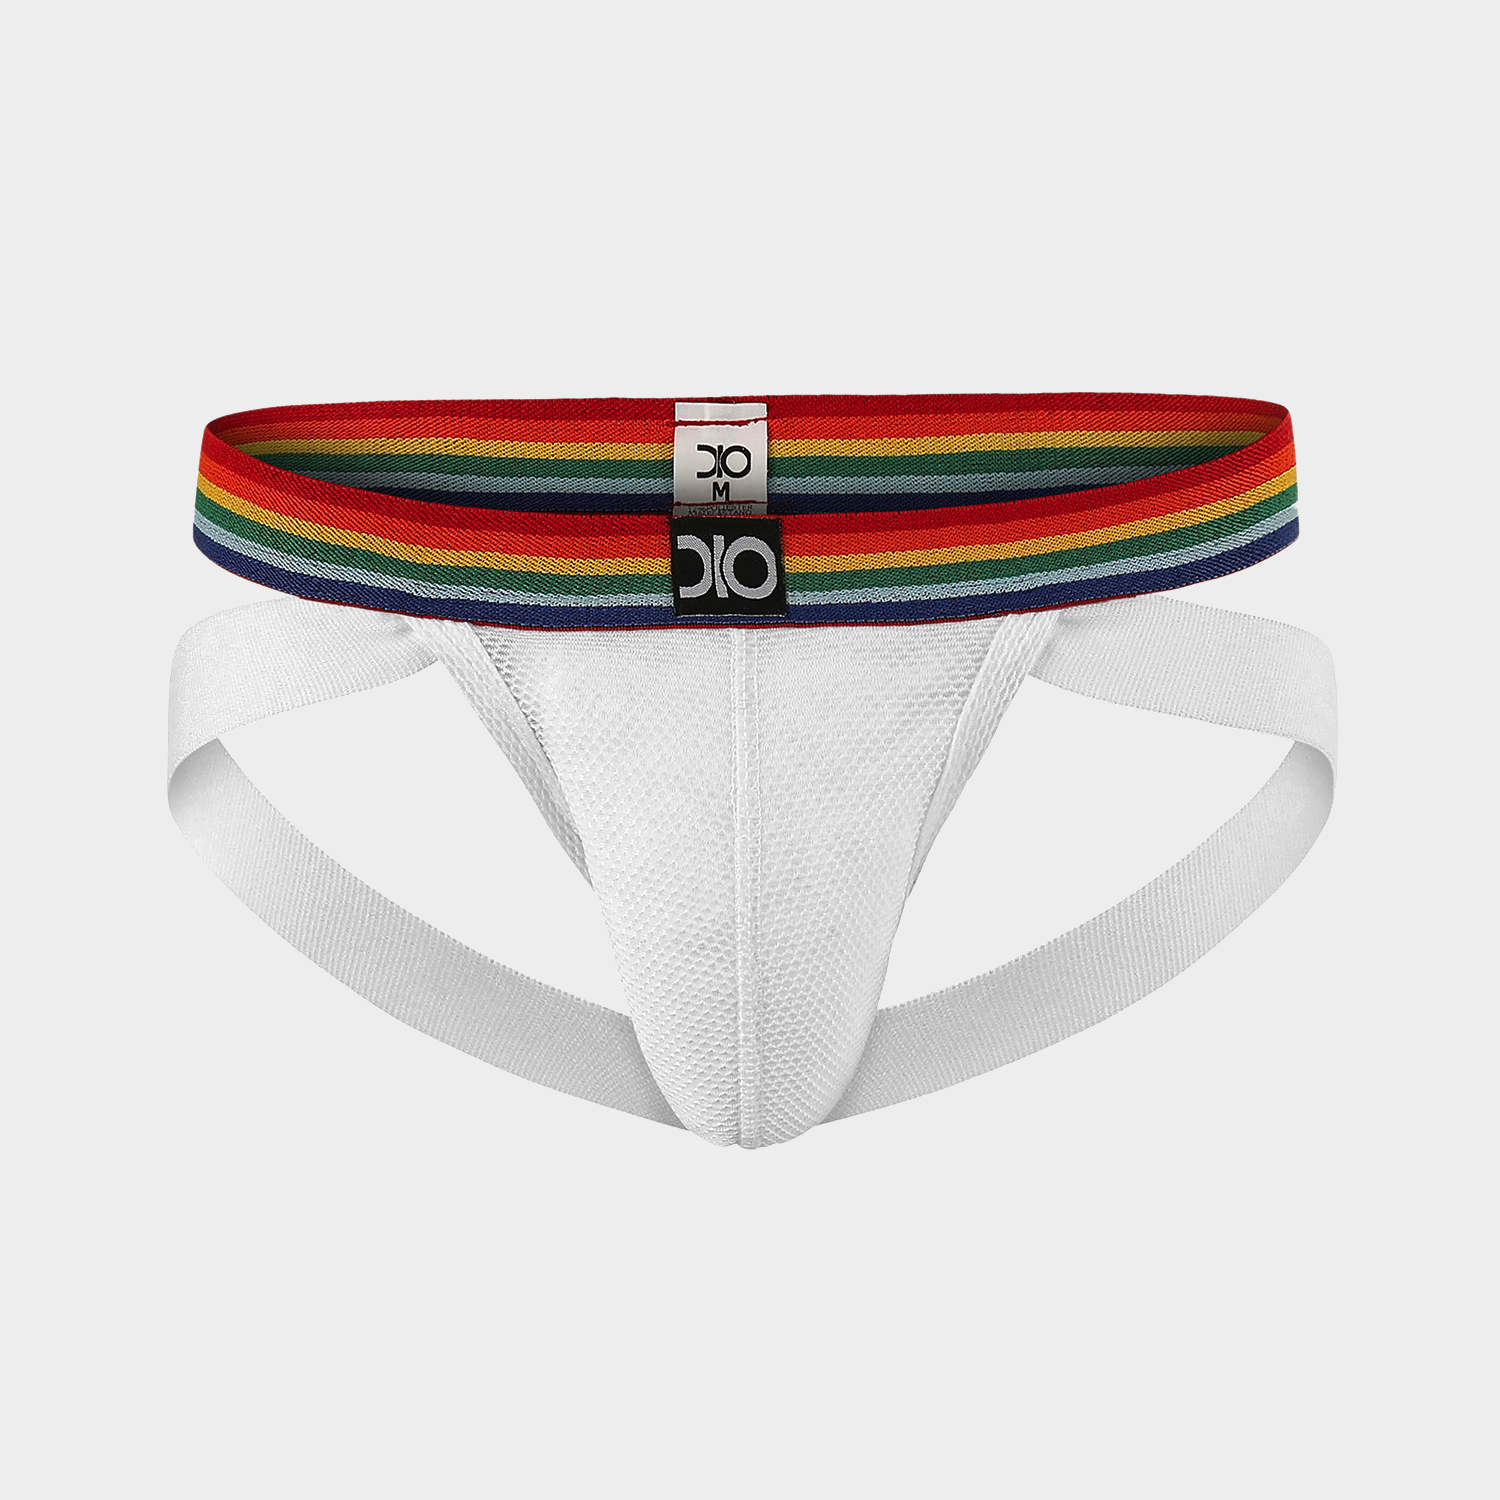 Jockstrap Pride DIO Collection Branco/Orgulho